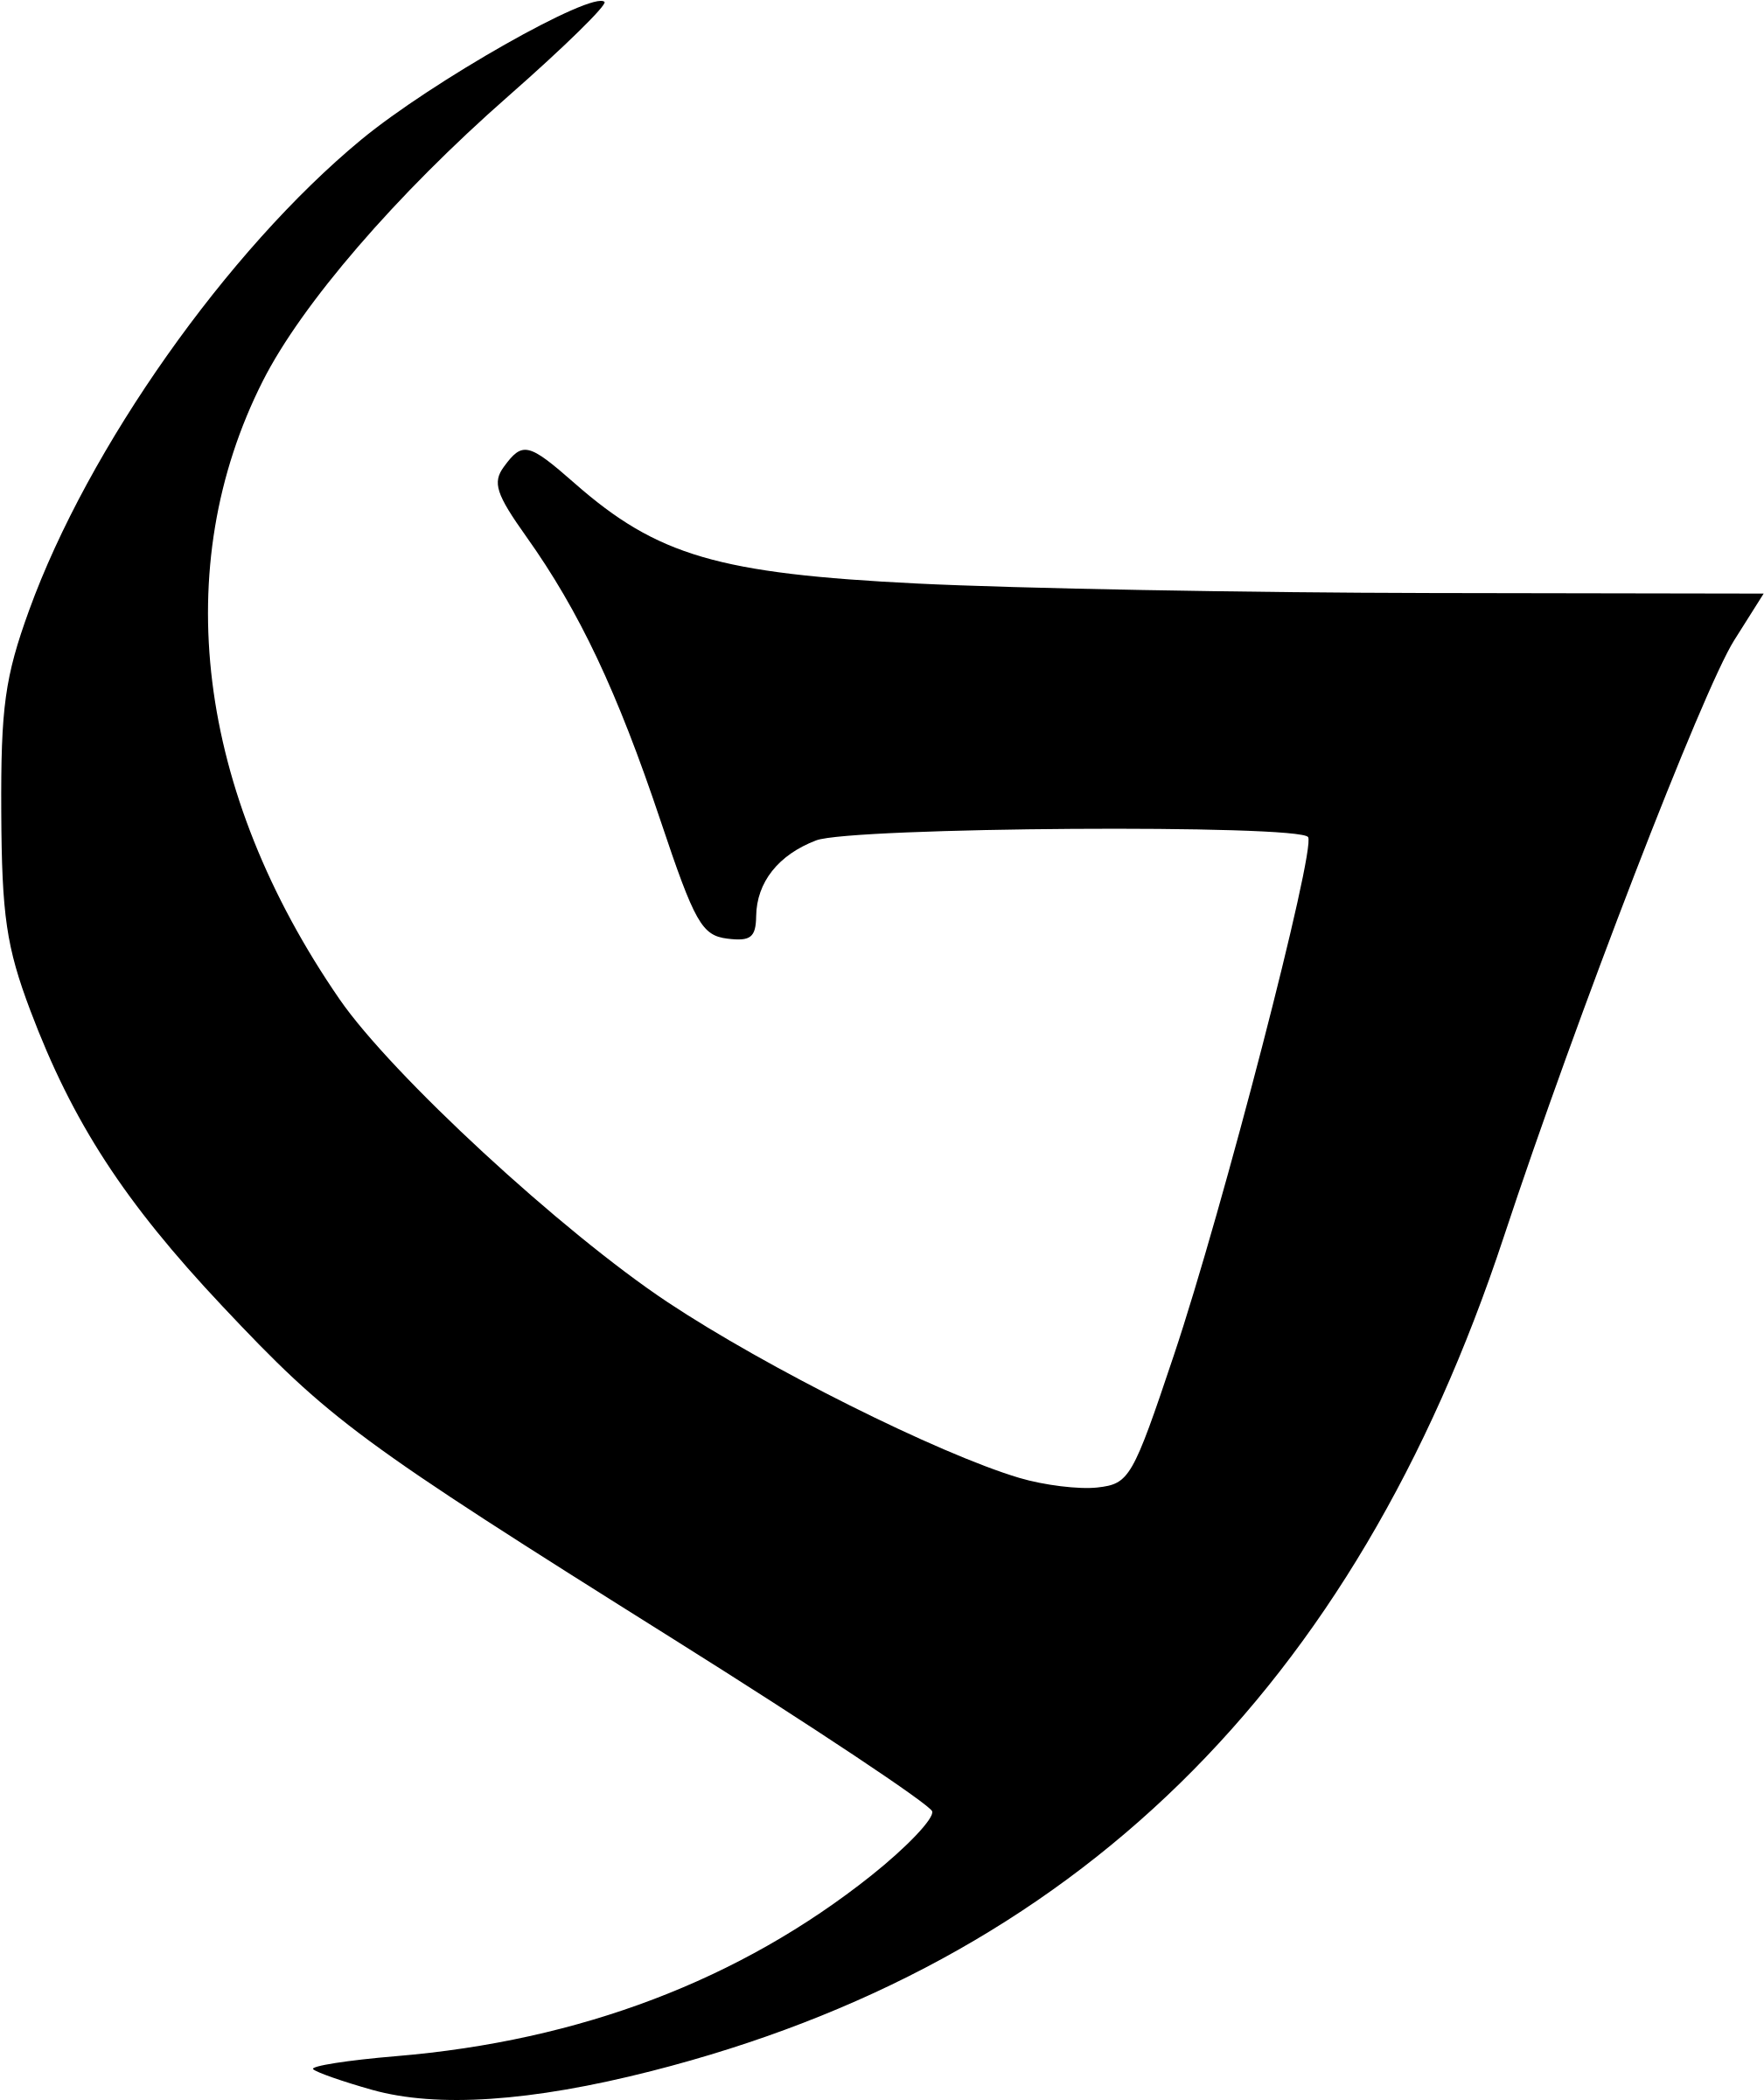 Gothic Glyph 2 - Gothic Glyph (2400x2400)